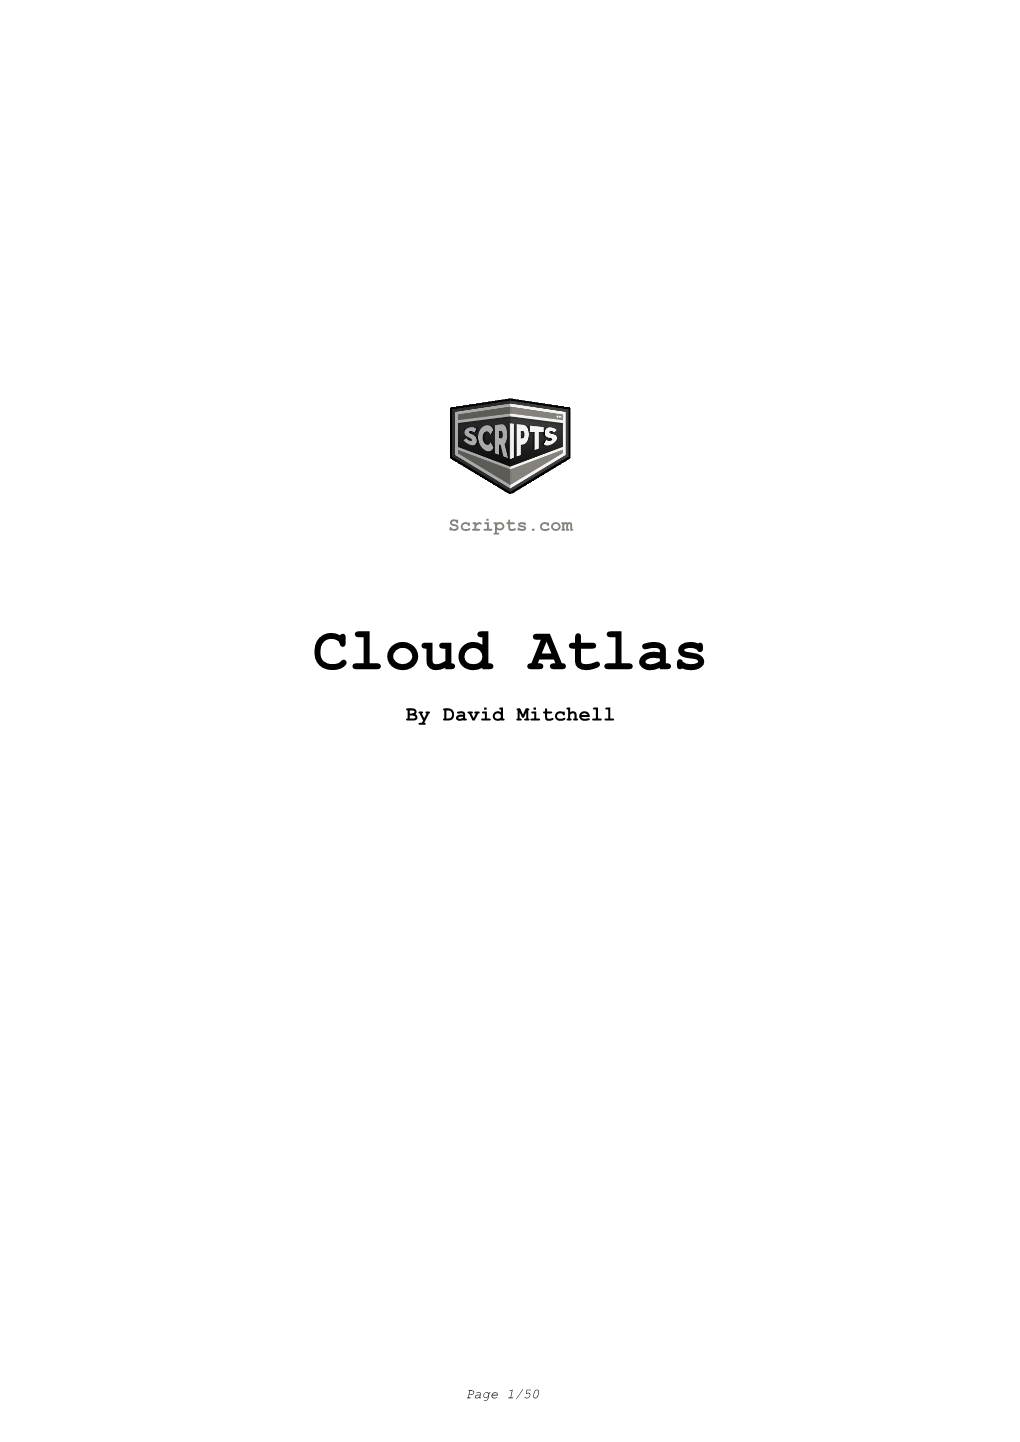 Cloud Atlas Movie Script in PDF Format